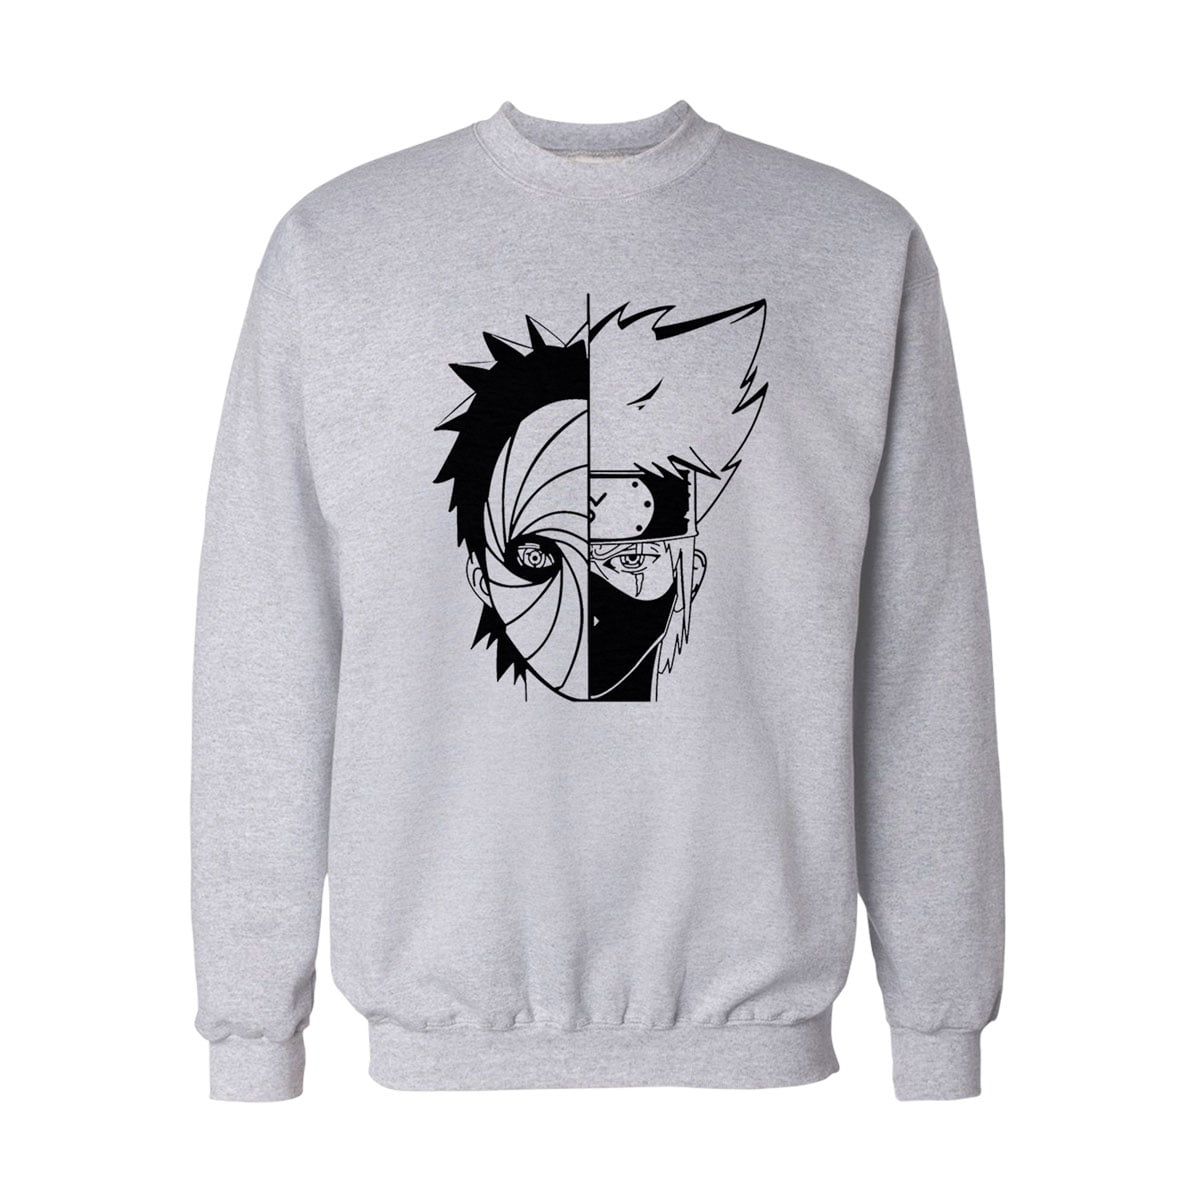 Obito Kakashi Naruto Sweatshirt B